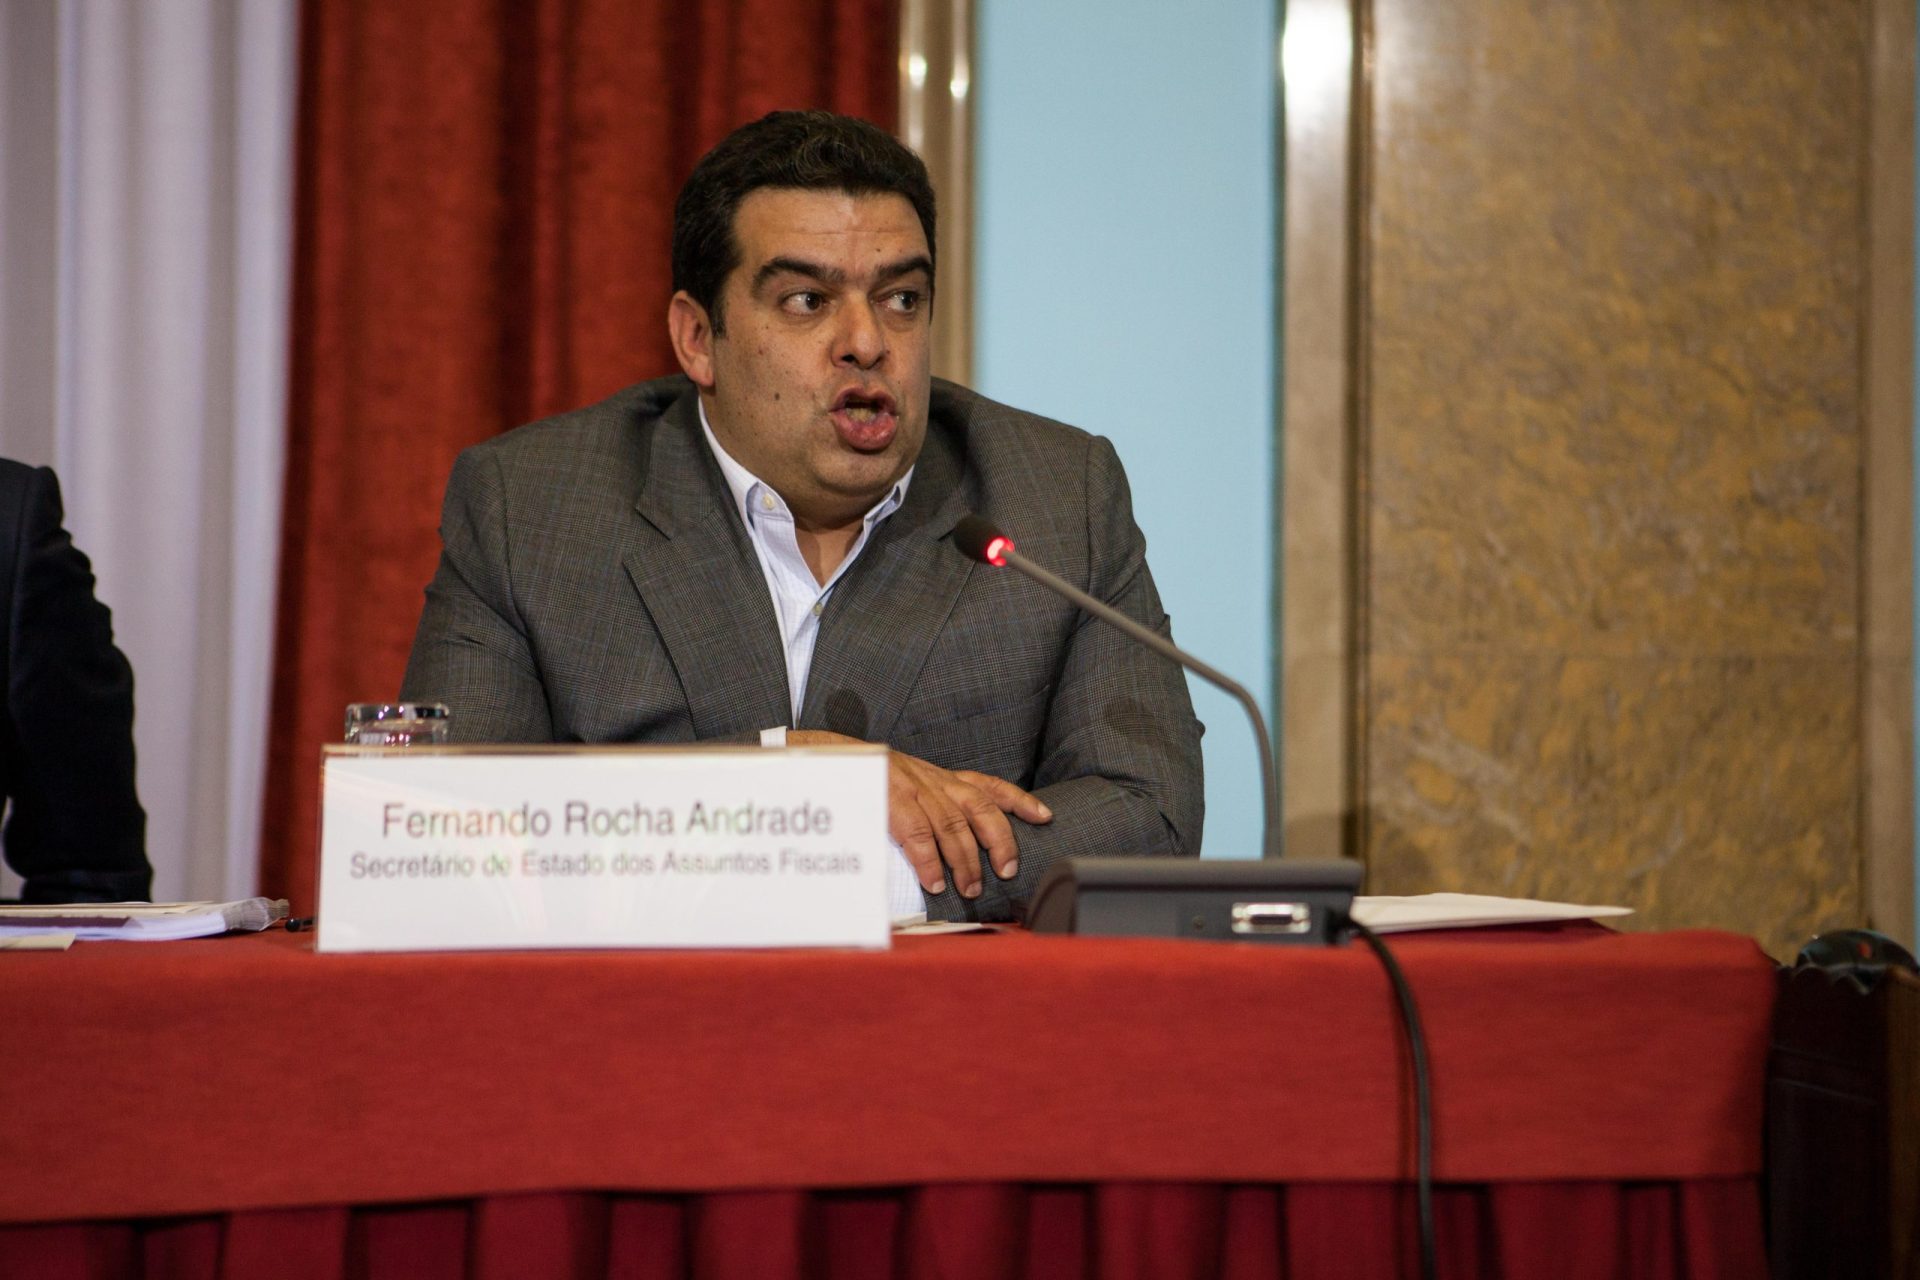 Morreu Fernando Rocha Andrade, ex-secretário de Estado